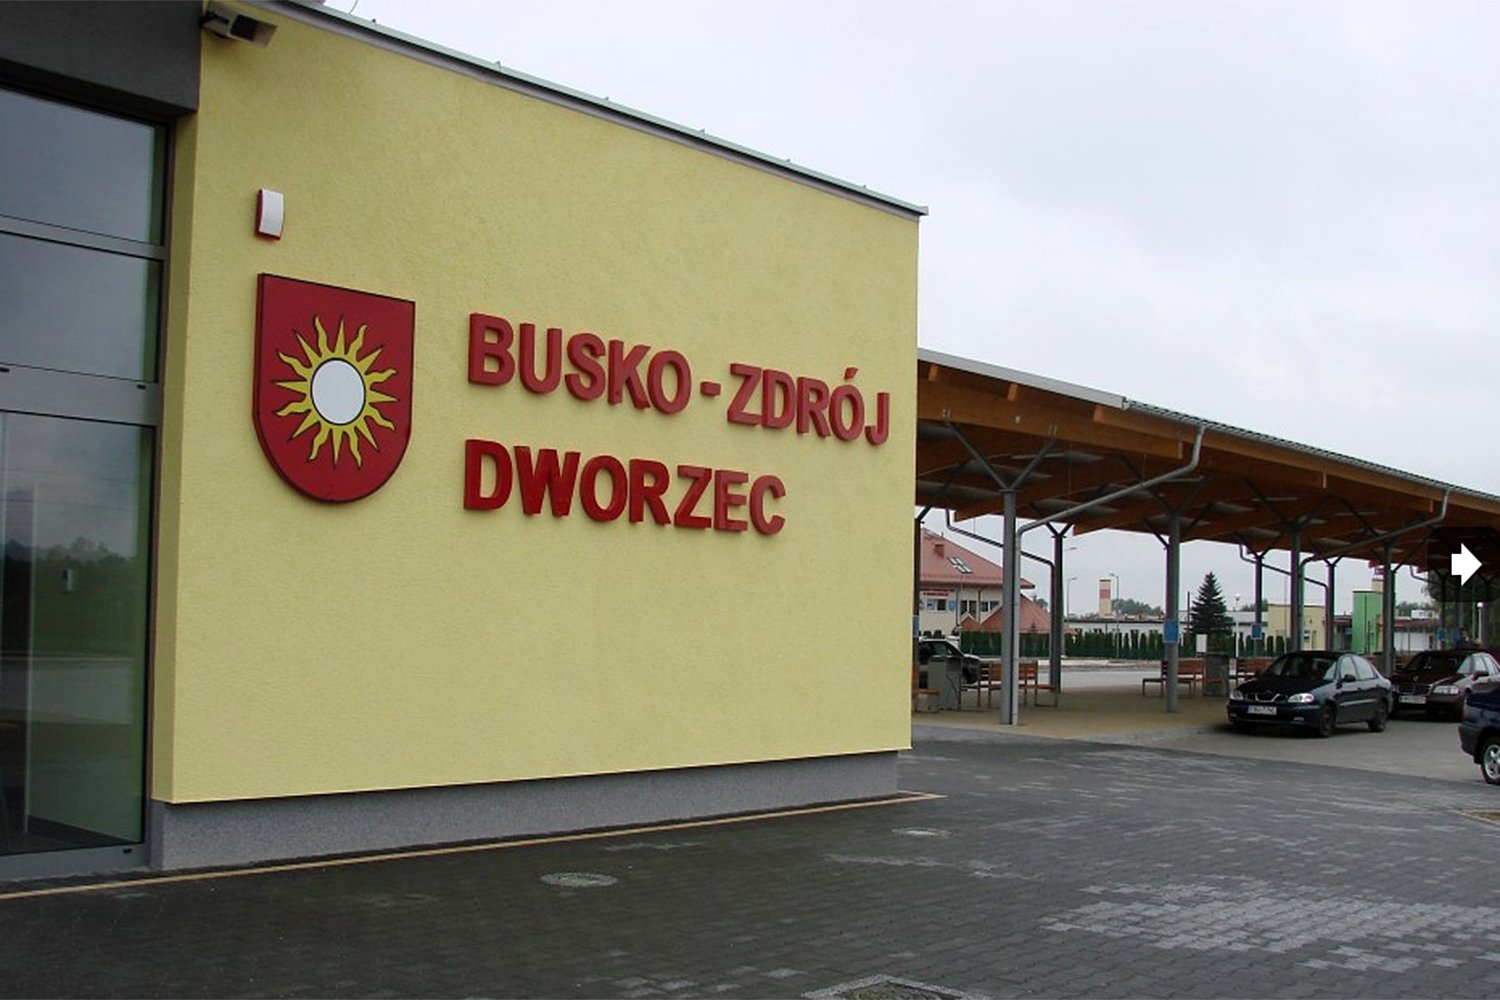 Busko-Zdrój. Dworzec / umig.busko.pl/